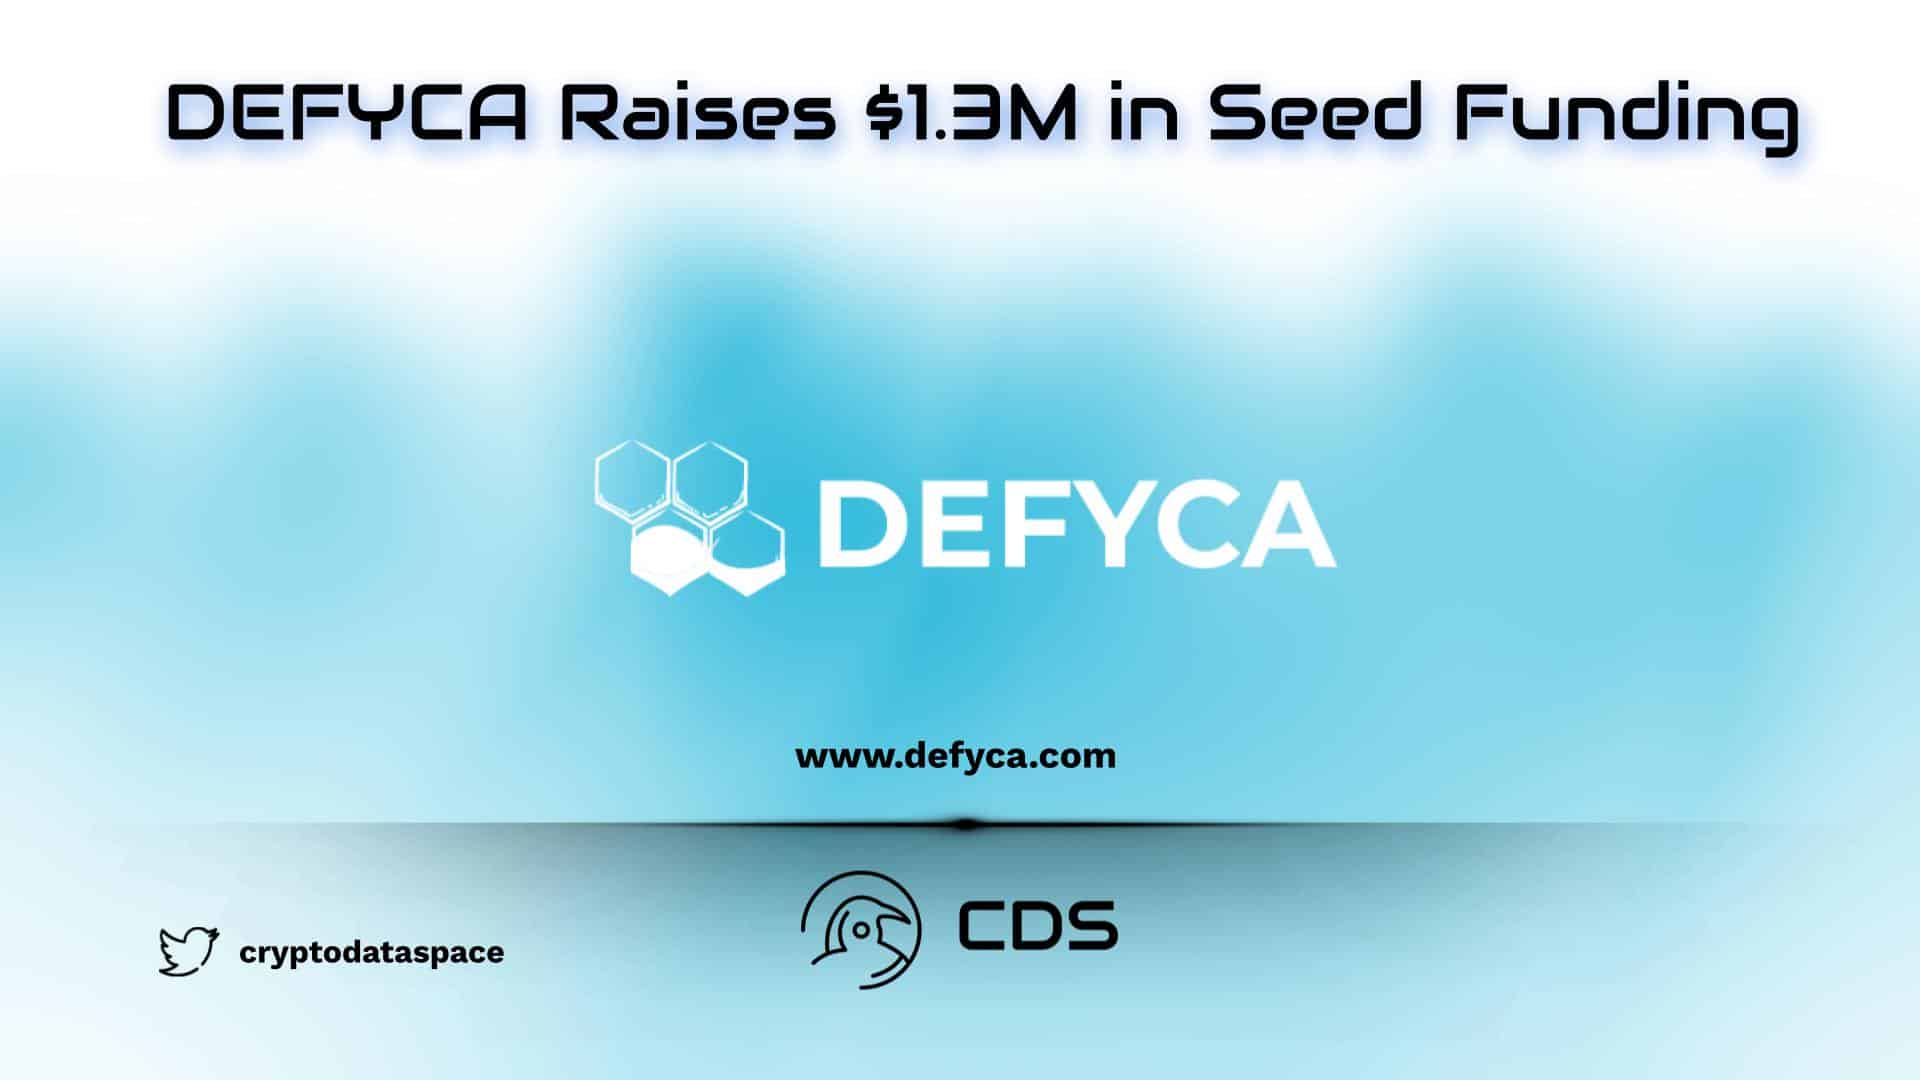 DEFYCA Raises $1.3M in Seed Funding